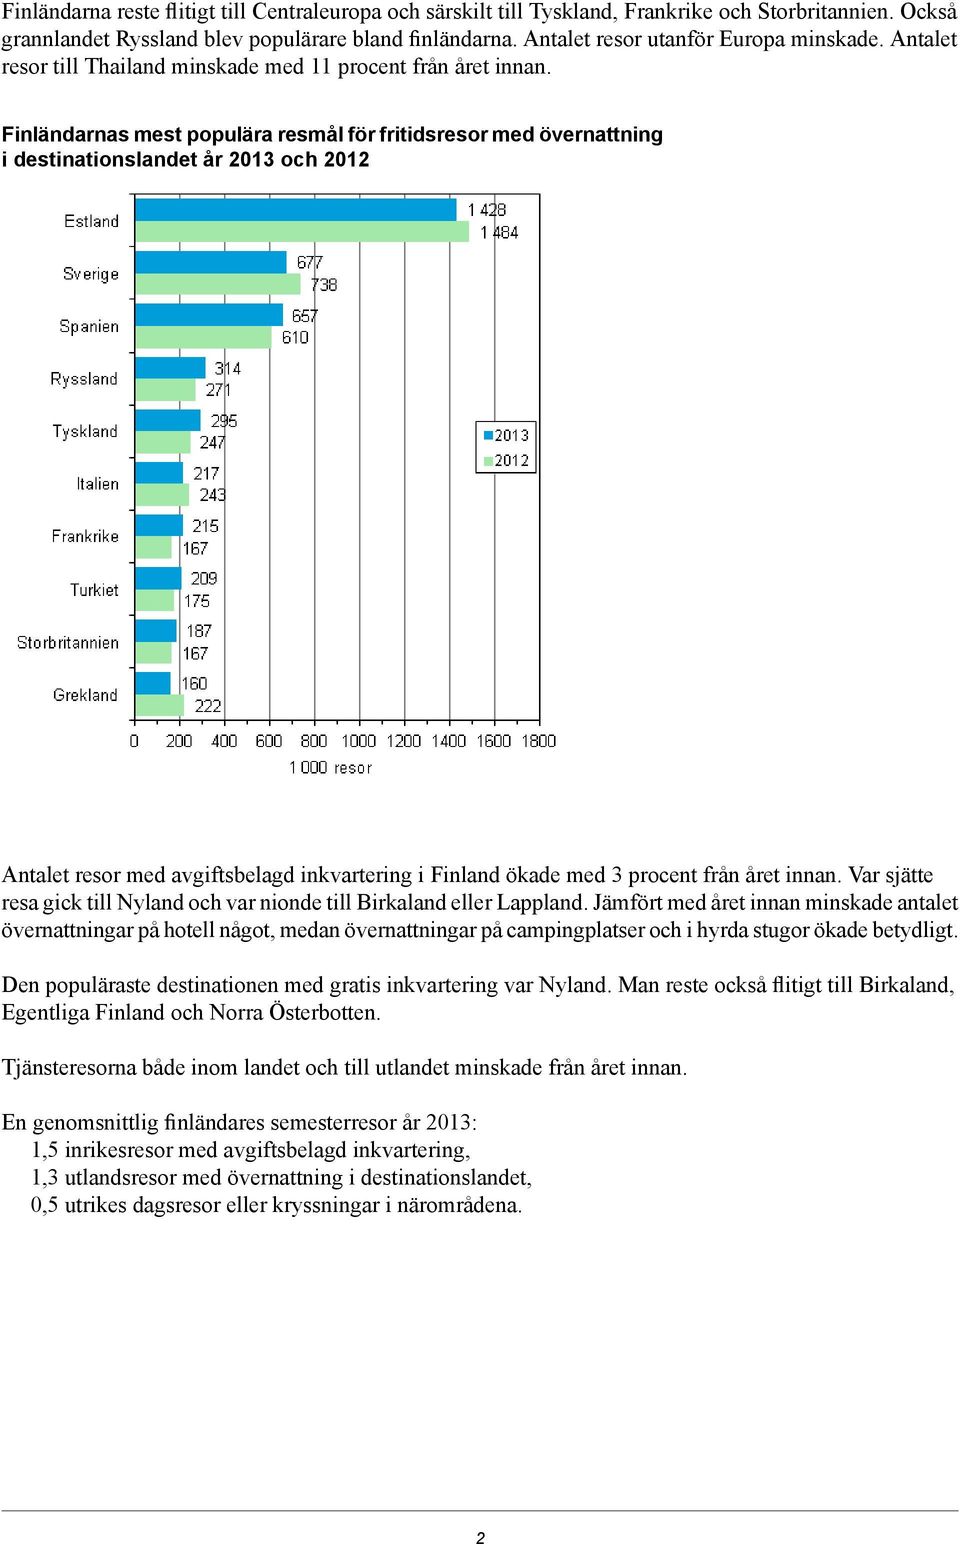 Finländarnas mest populära resmål för fritidsresor med övernattning i destinationslandet år 2013 och 2012 Antalet resor med avgiftsbelagd inkvartering i Finland ökade med 3 procent från året innan.